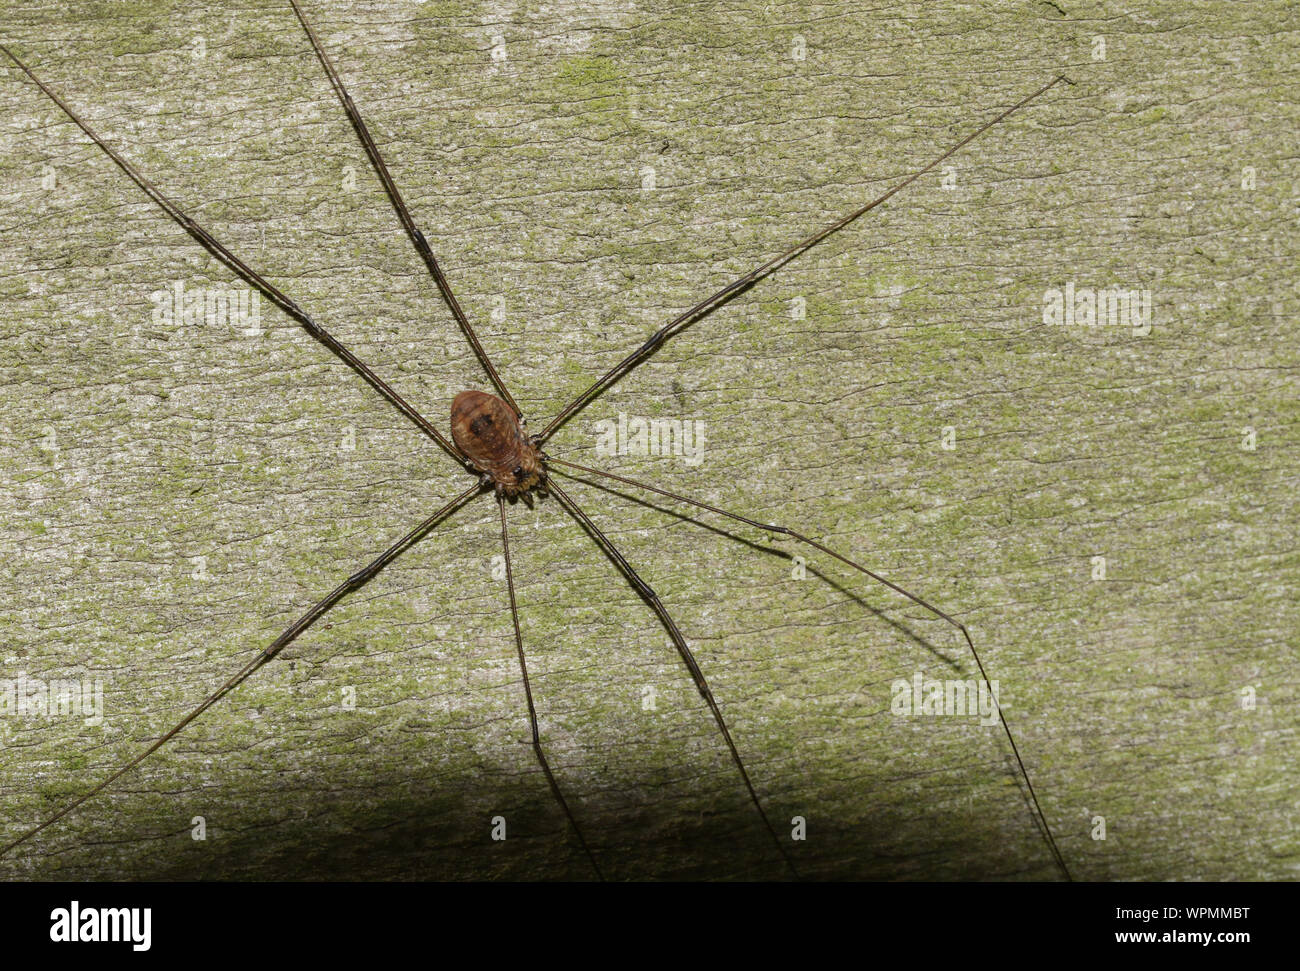 Un ragno Harvestmen, Sclerosomatidae-Leiobunum blackwalli, caccia su una staccionata in legno in corrispondenza del bordo del bosco. Foto Stock